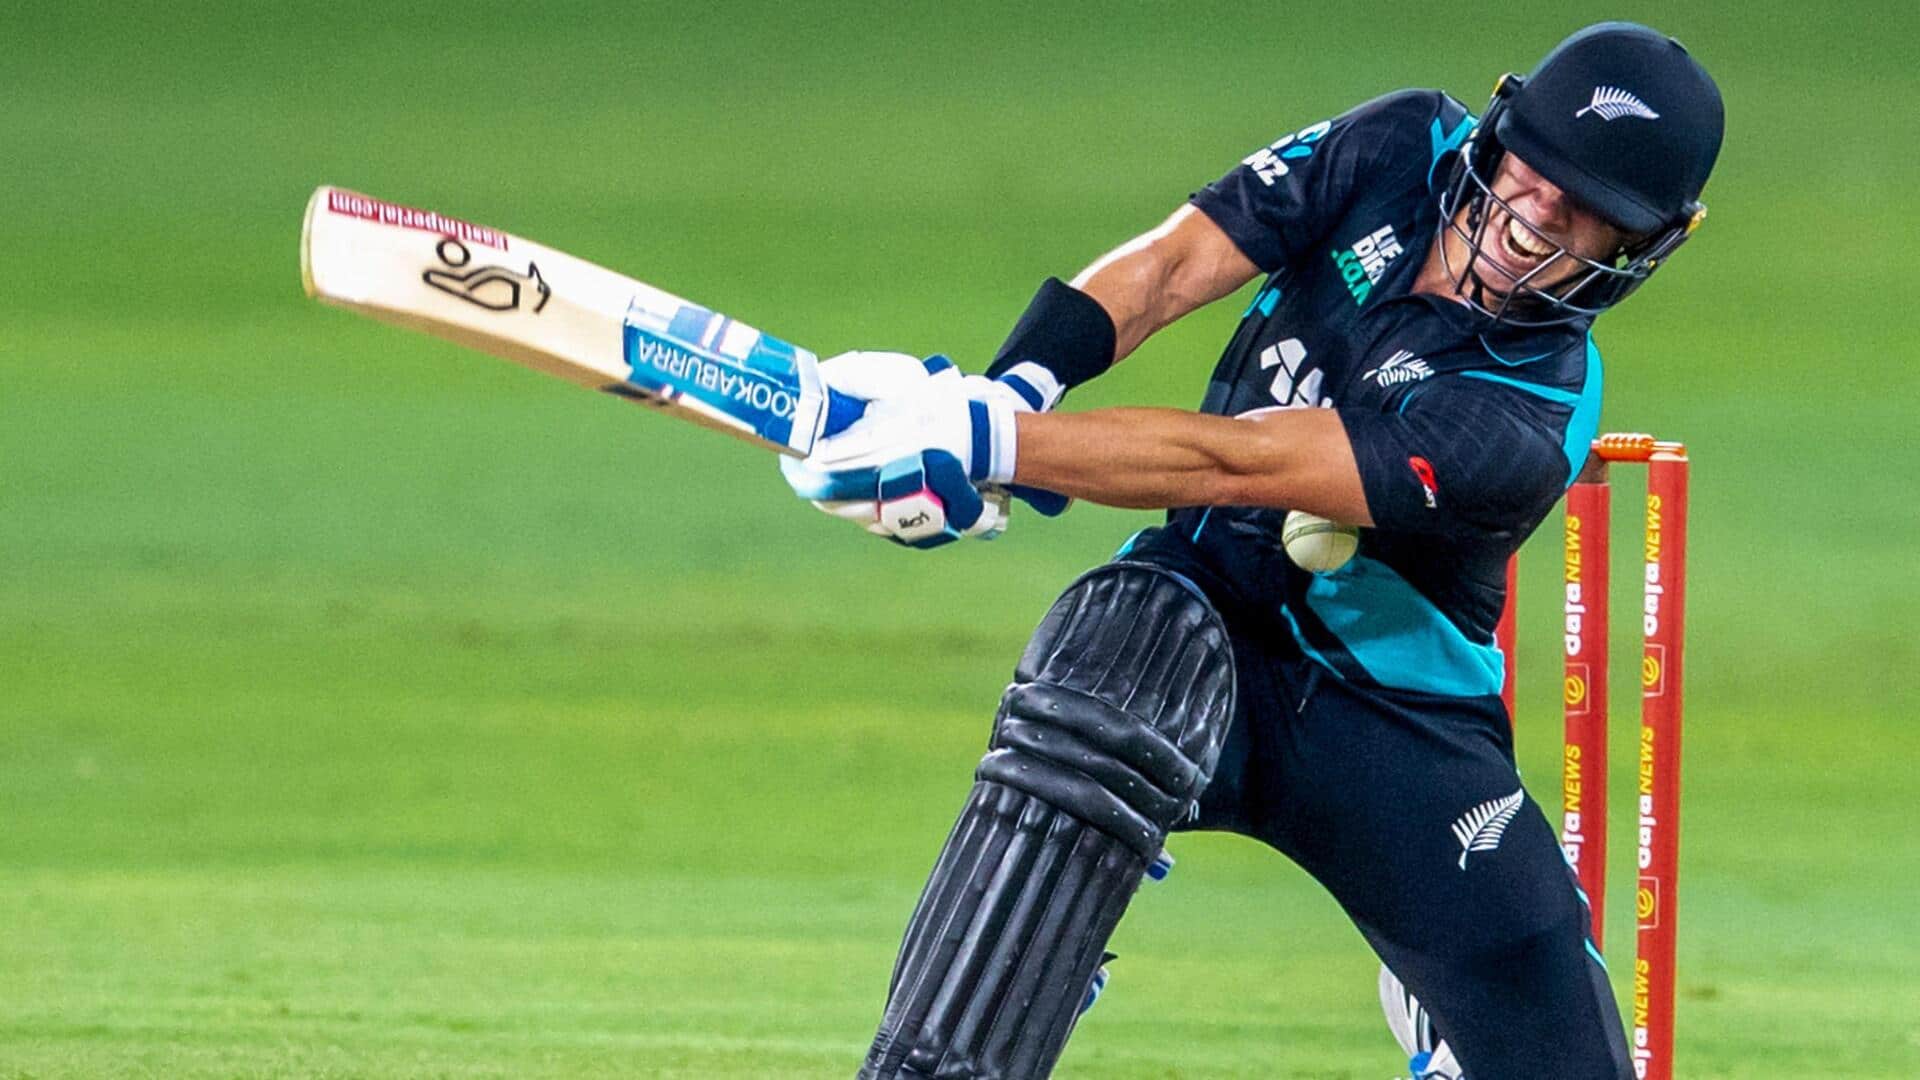 UAE बनाम न्यूजीलैंड: विल यंग ने खेली टी-20 करियर की सर्वश्रेष्ठ पारी, जानिए उनके आंकड़े